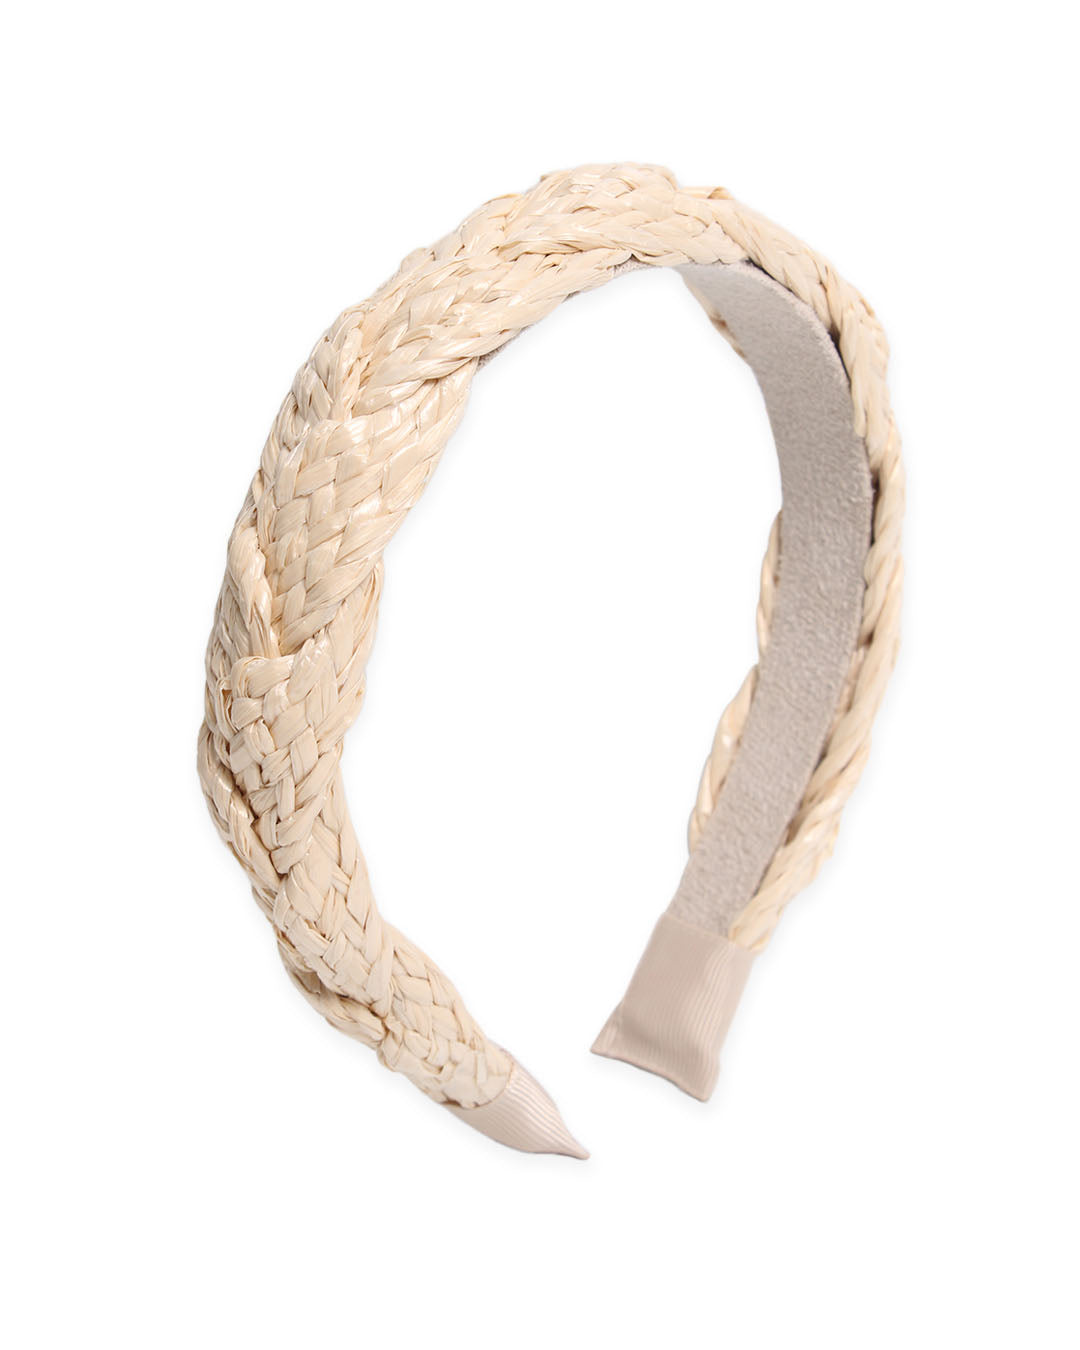 Braided Sea Grass - Raffia Headband | BANDED Hair Accessories